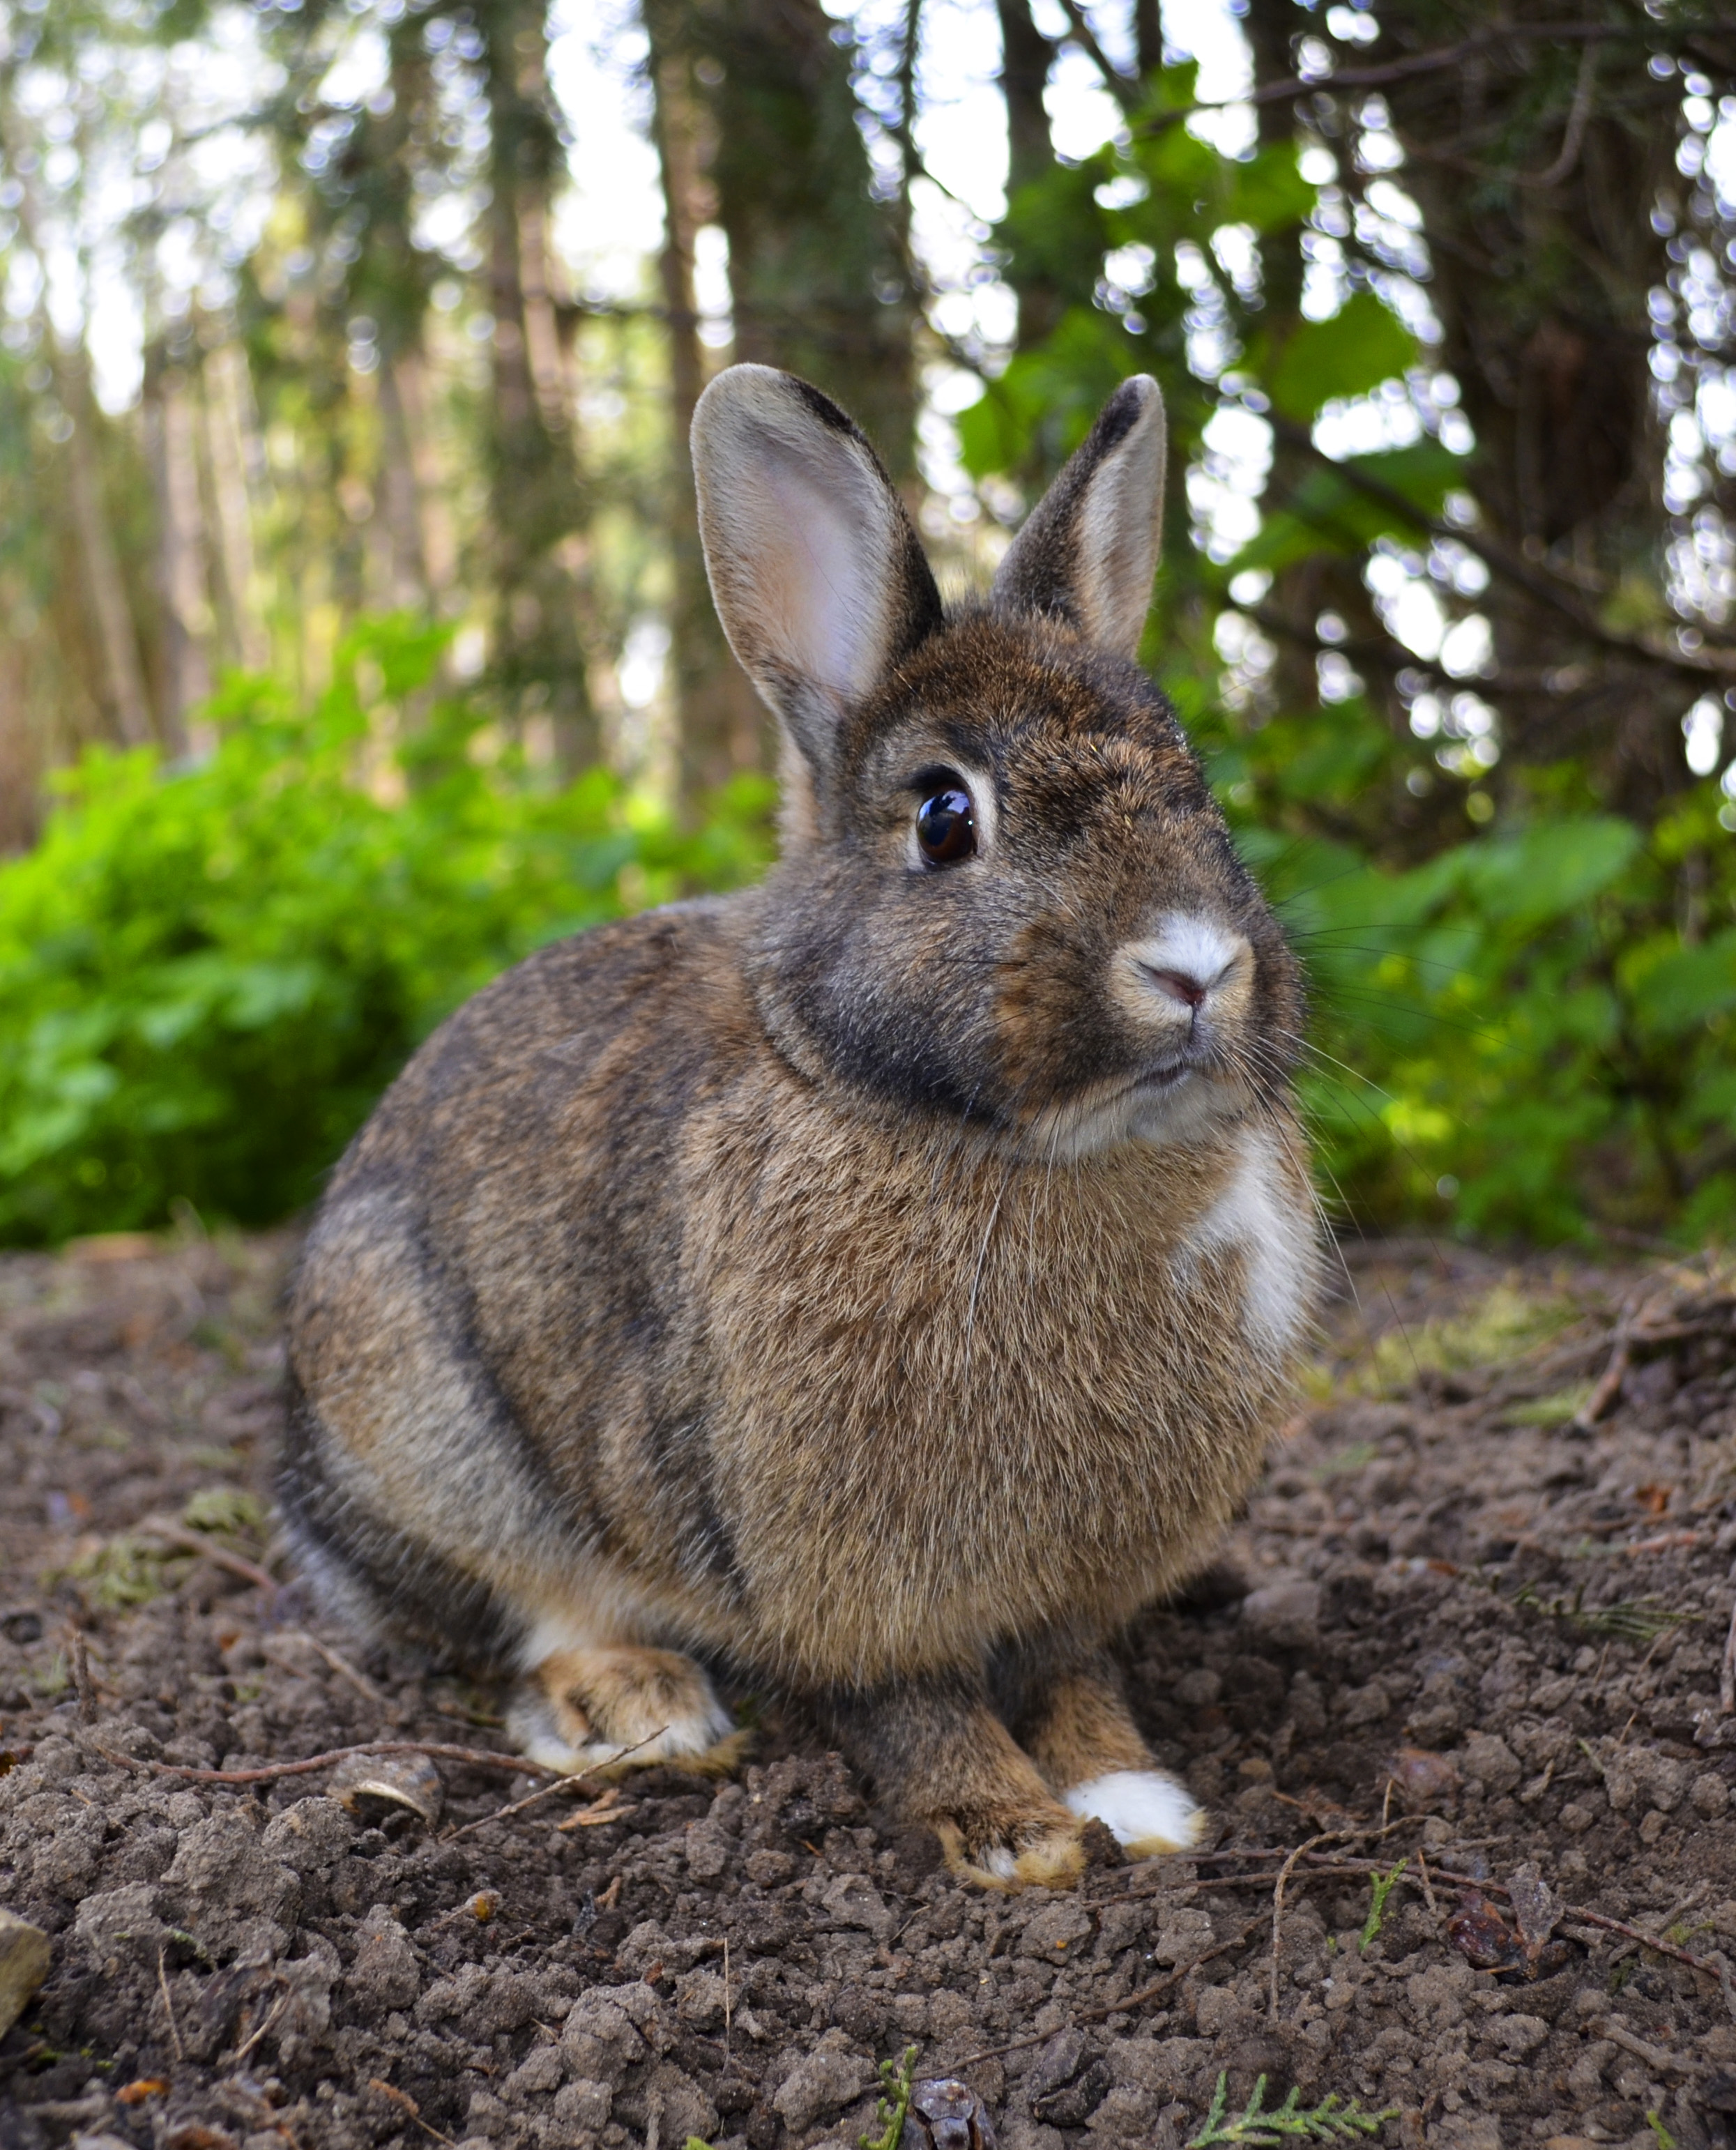 Are rabbits mammals or reptiles?